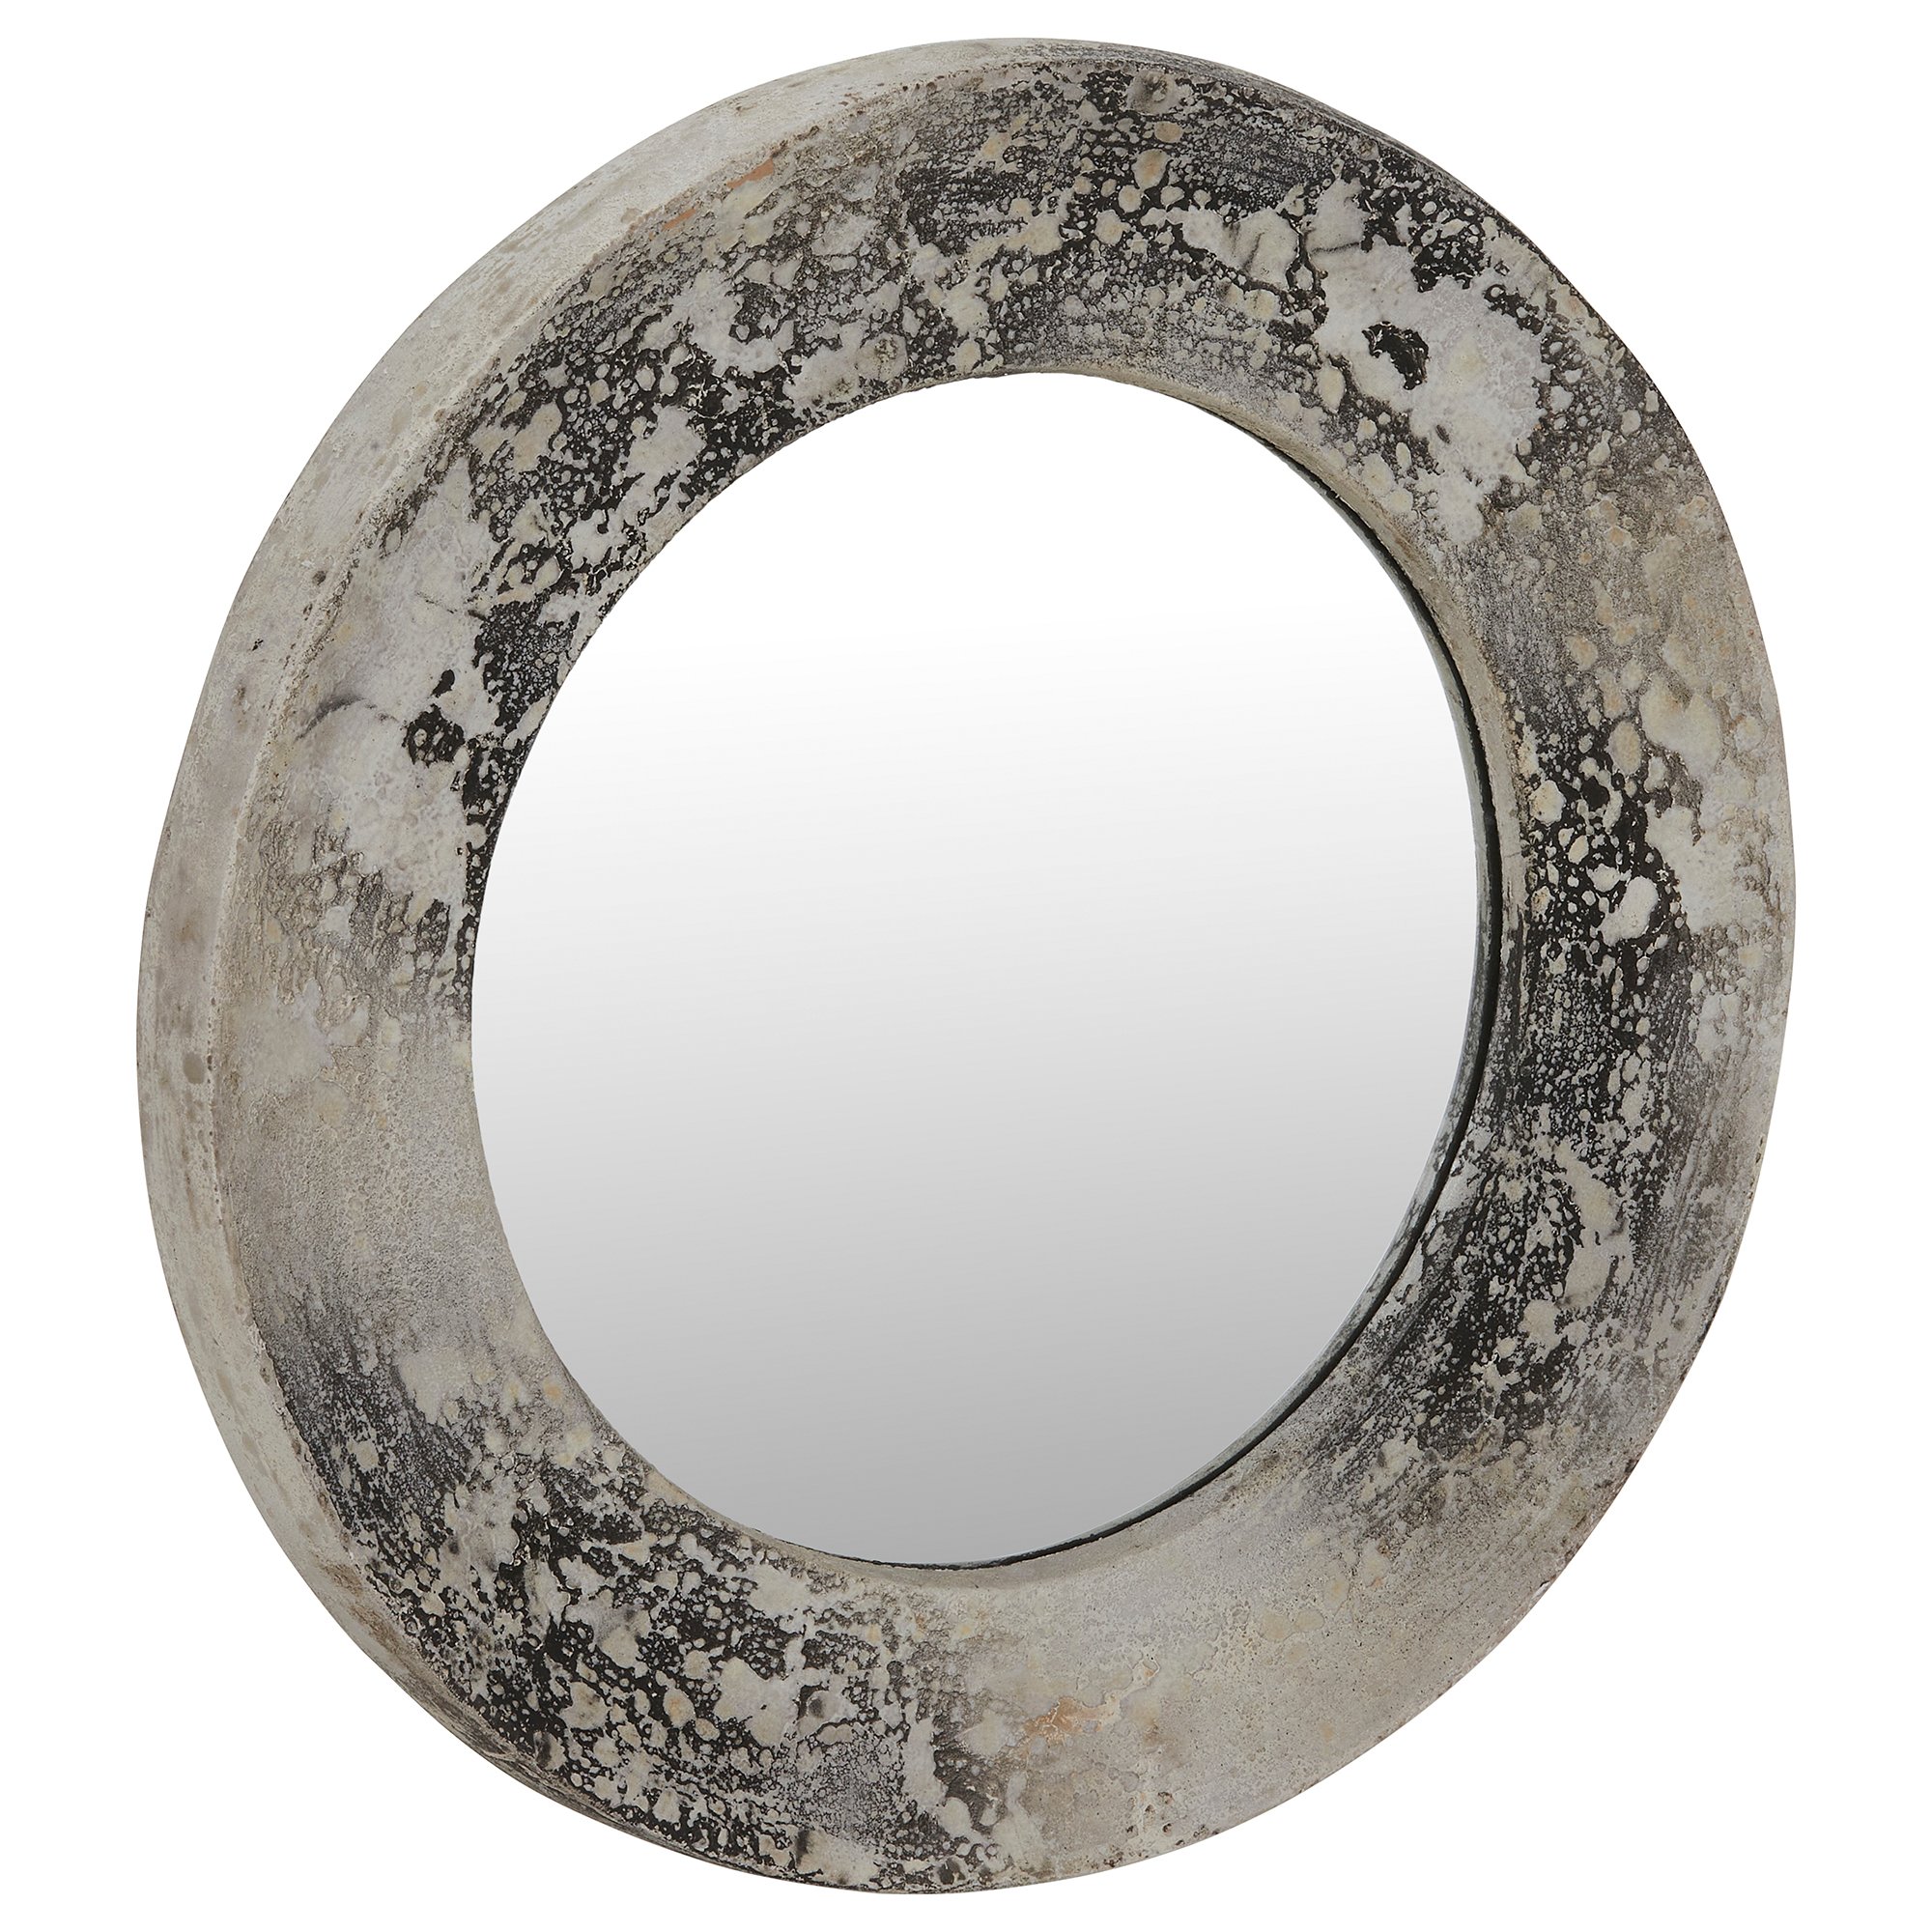 Concrete Effect Mirror, Round, Neutral | Barker & Stonehouse